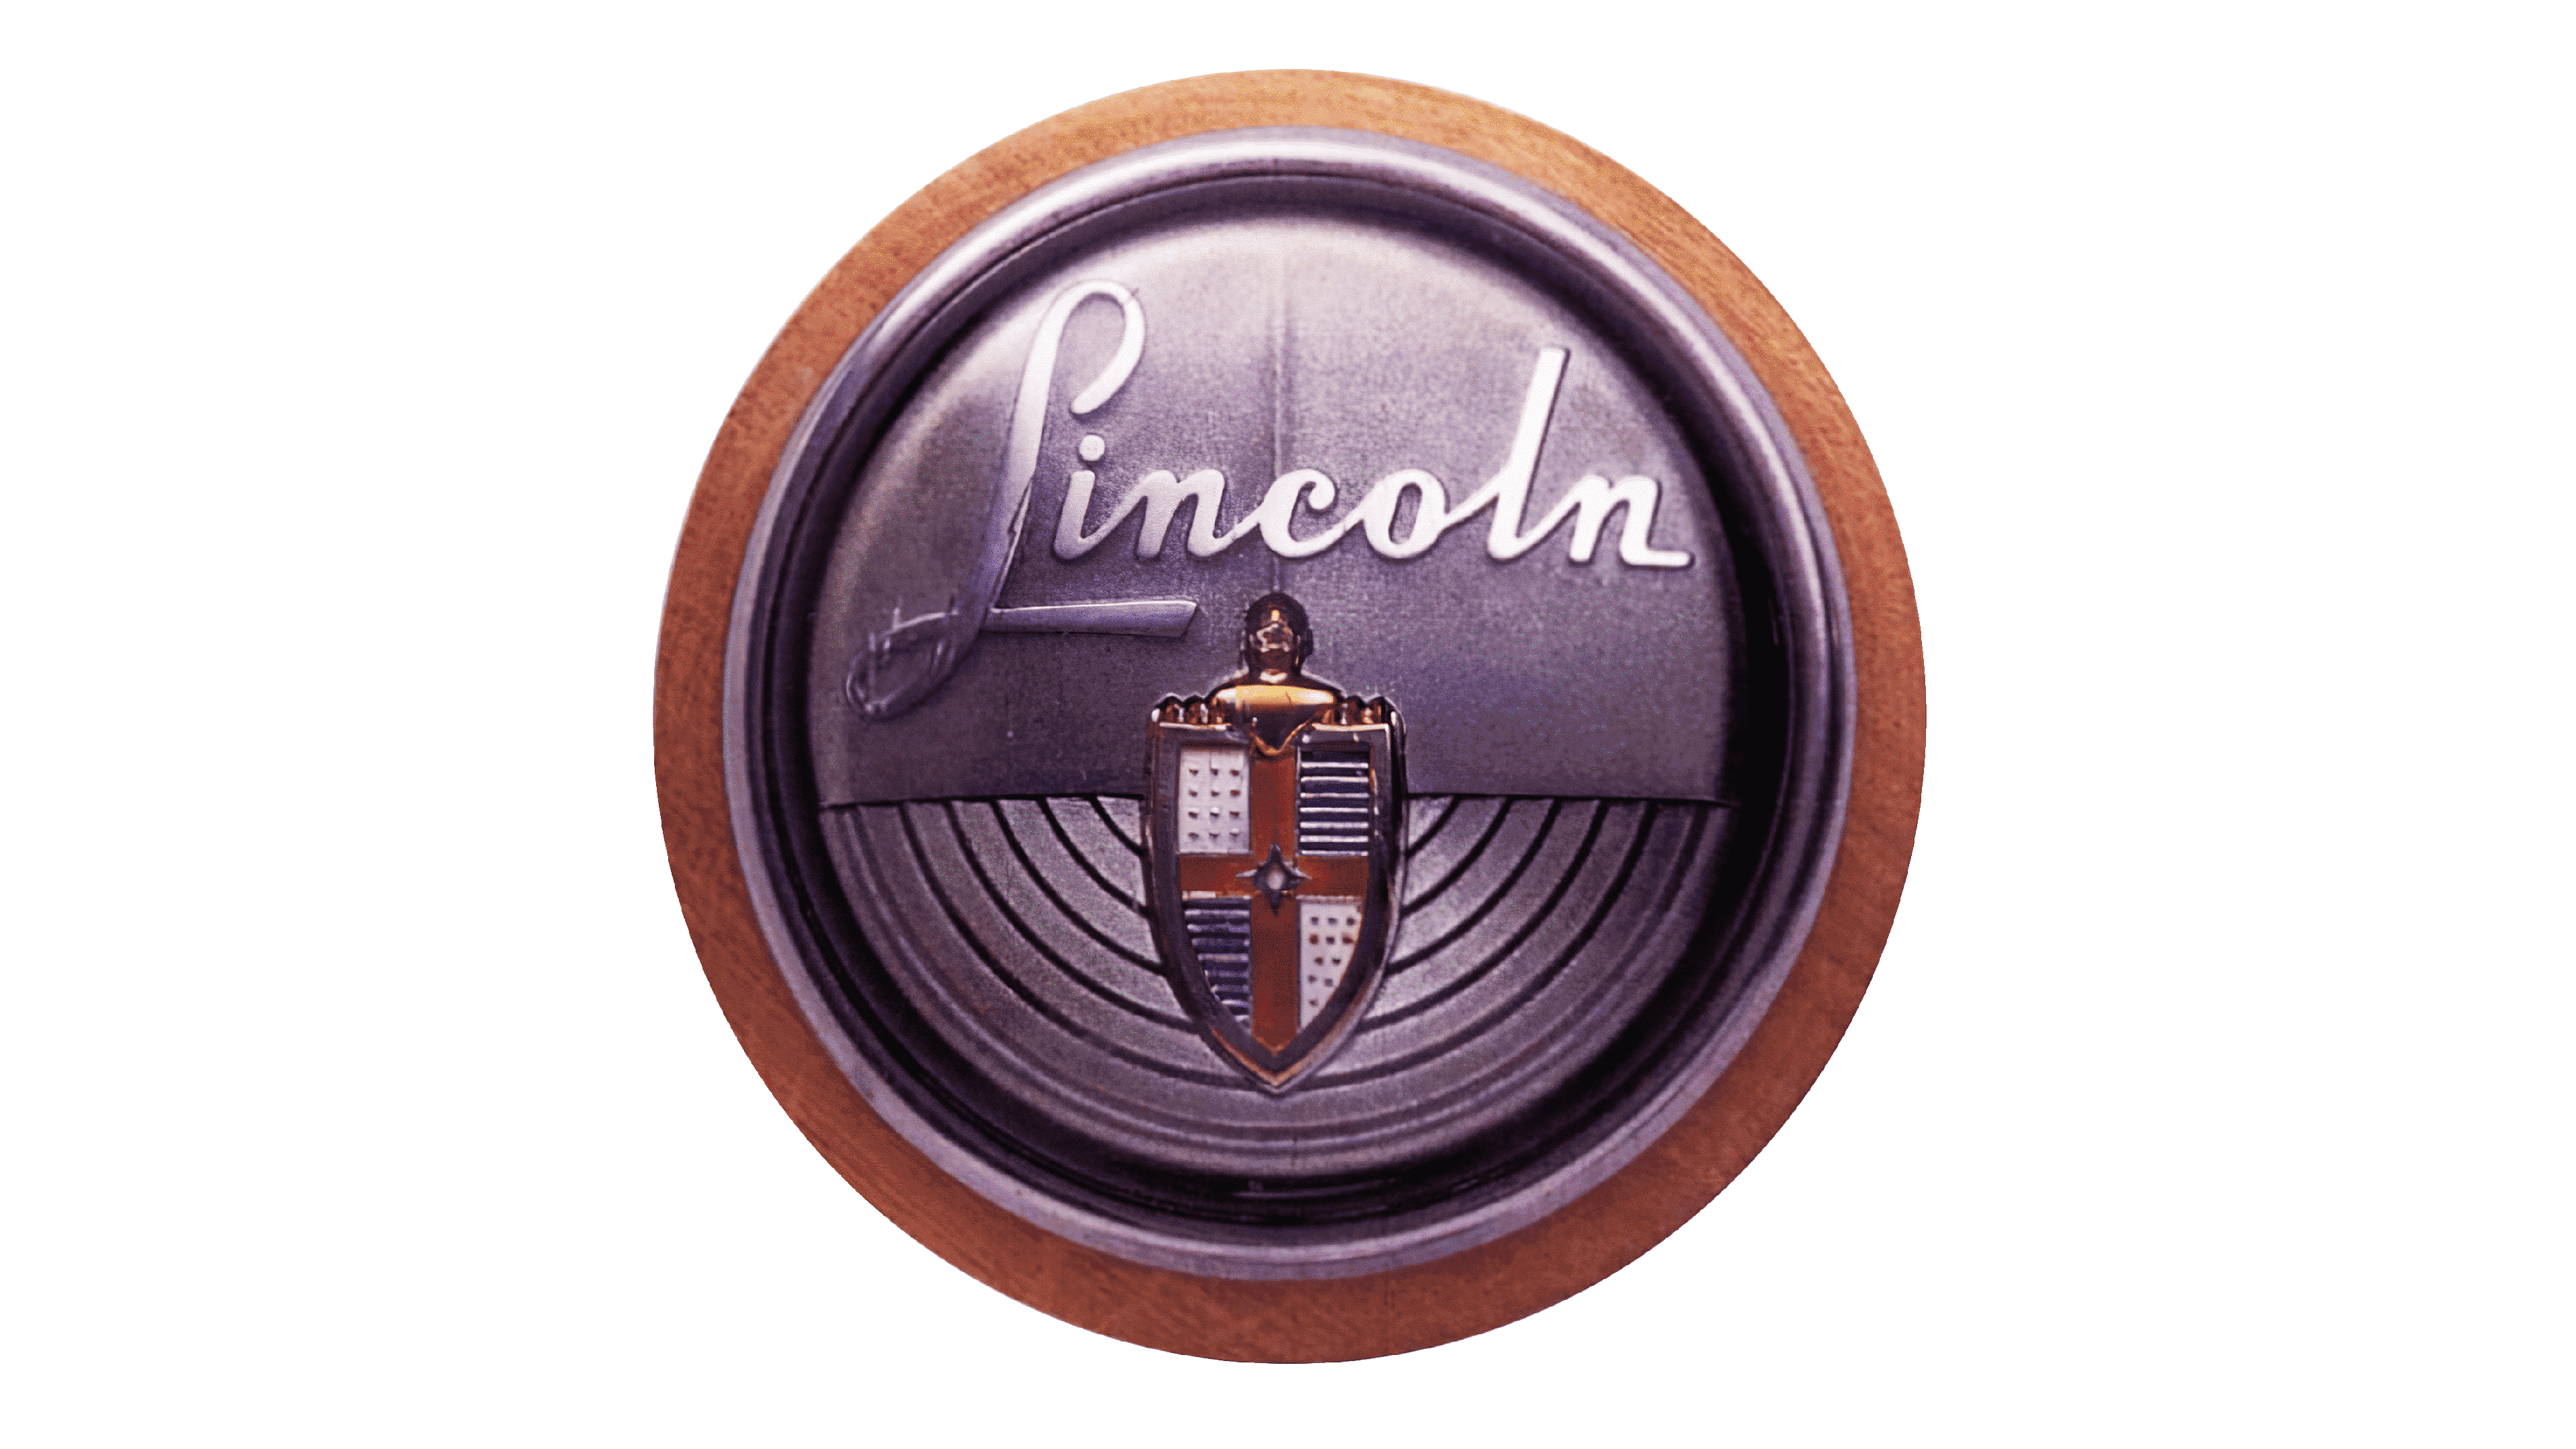 Lincoln Motor Company Logo